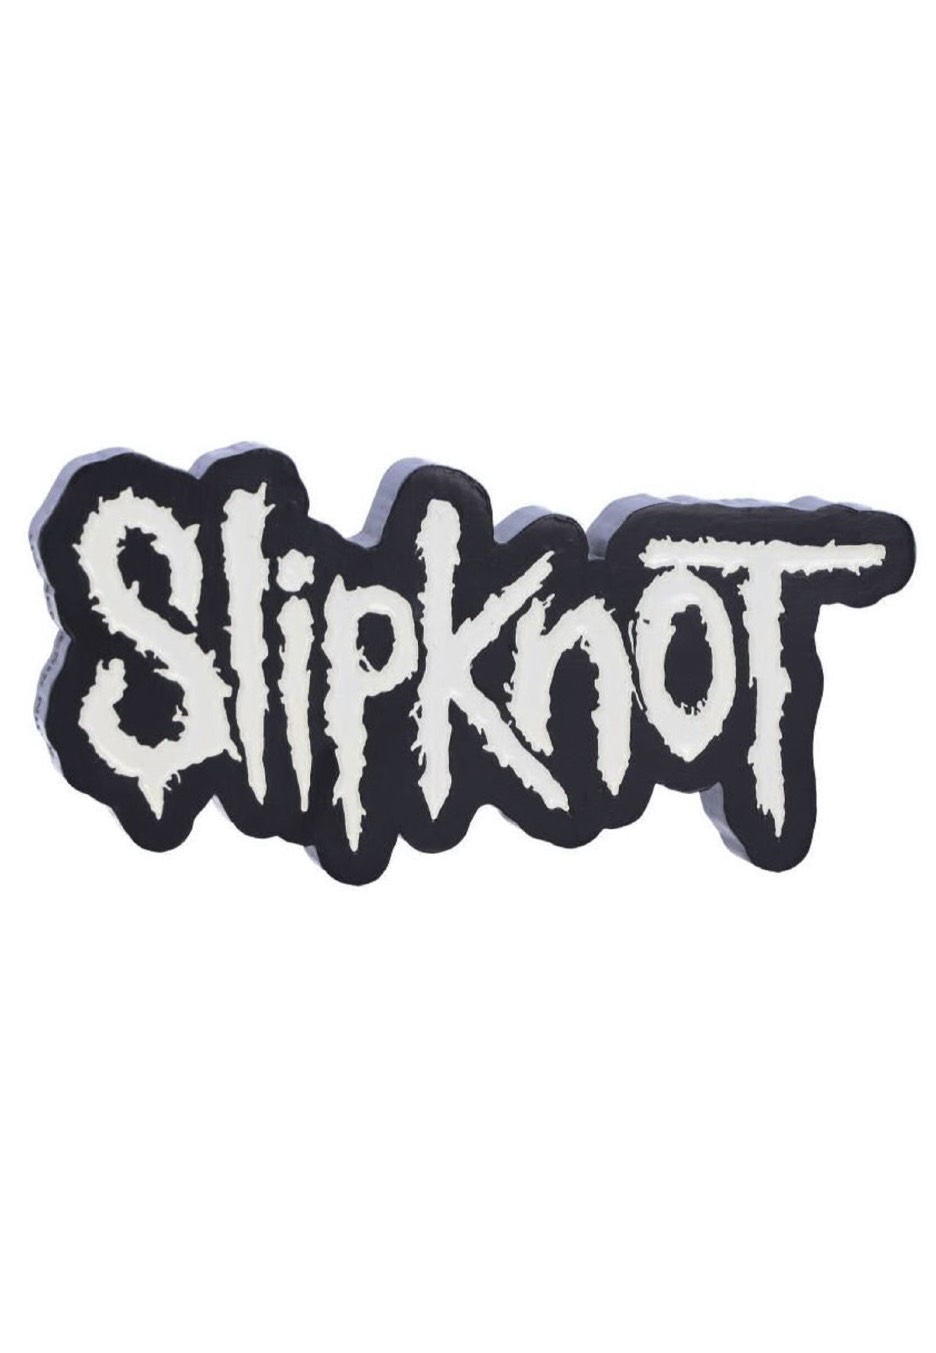 Slipknot - Slipknot Magnet -